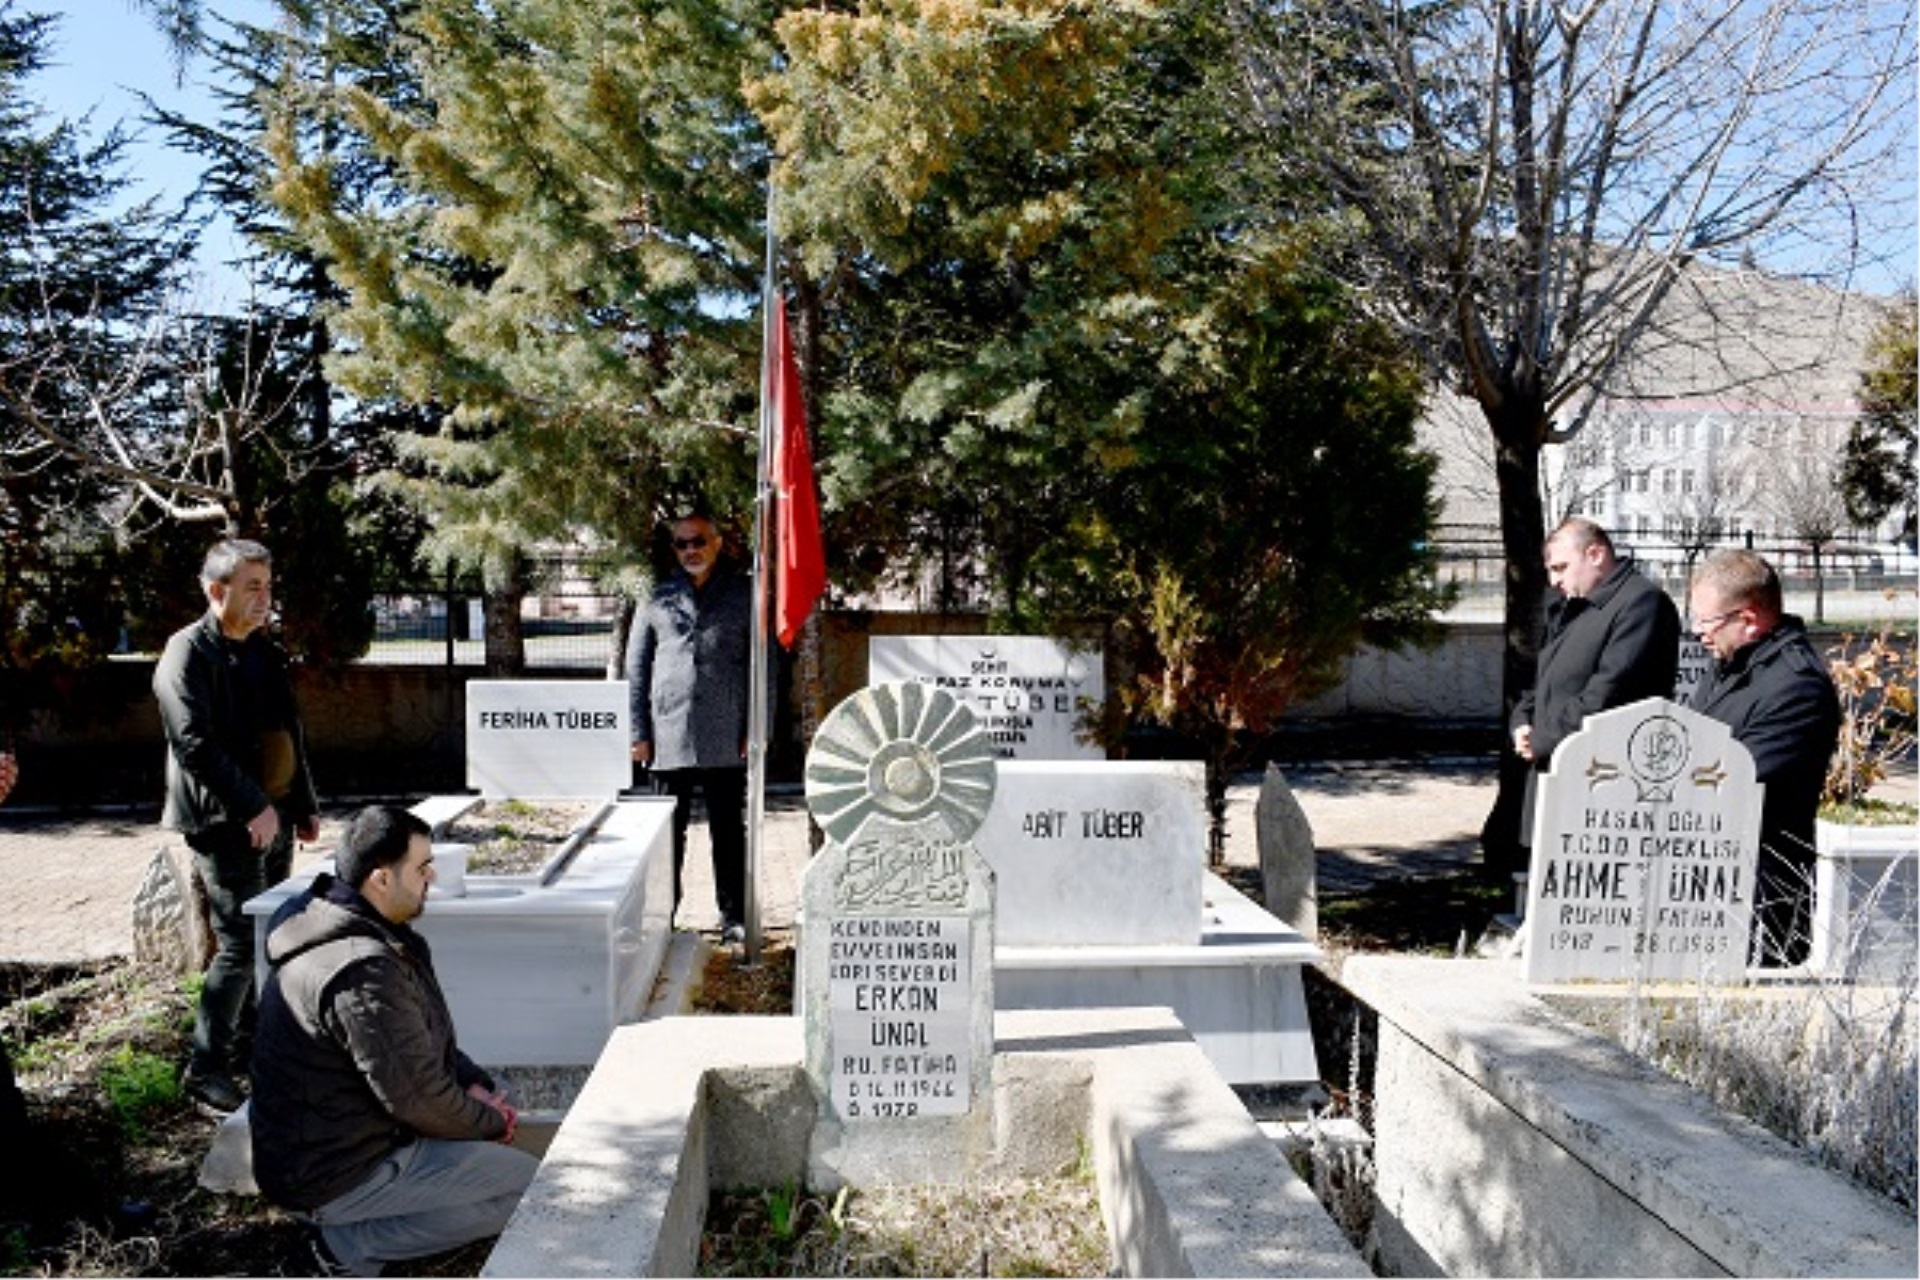 Niğde Açık Cezaevi İnfaz Kurumu’nda  5 Mart 2009 yılında iki mahkûmun silahlı saldırısı sonucu şehit olan İnfaz ve Koruma Başmemuru Abit Tüber, ölüm yıldönümünde mezarı başında anıldı